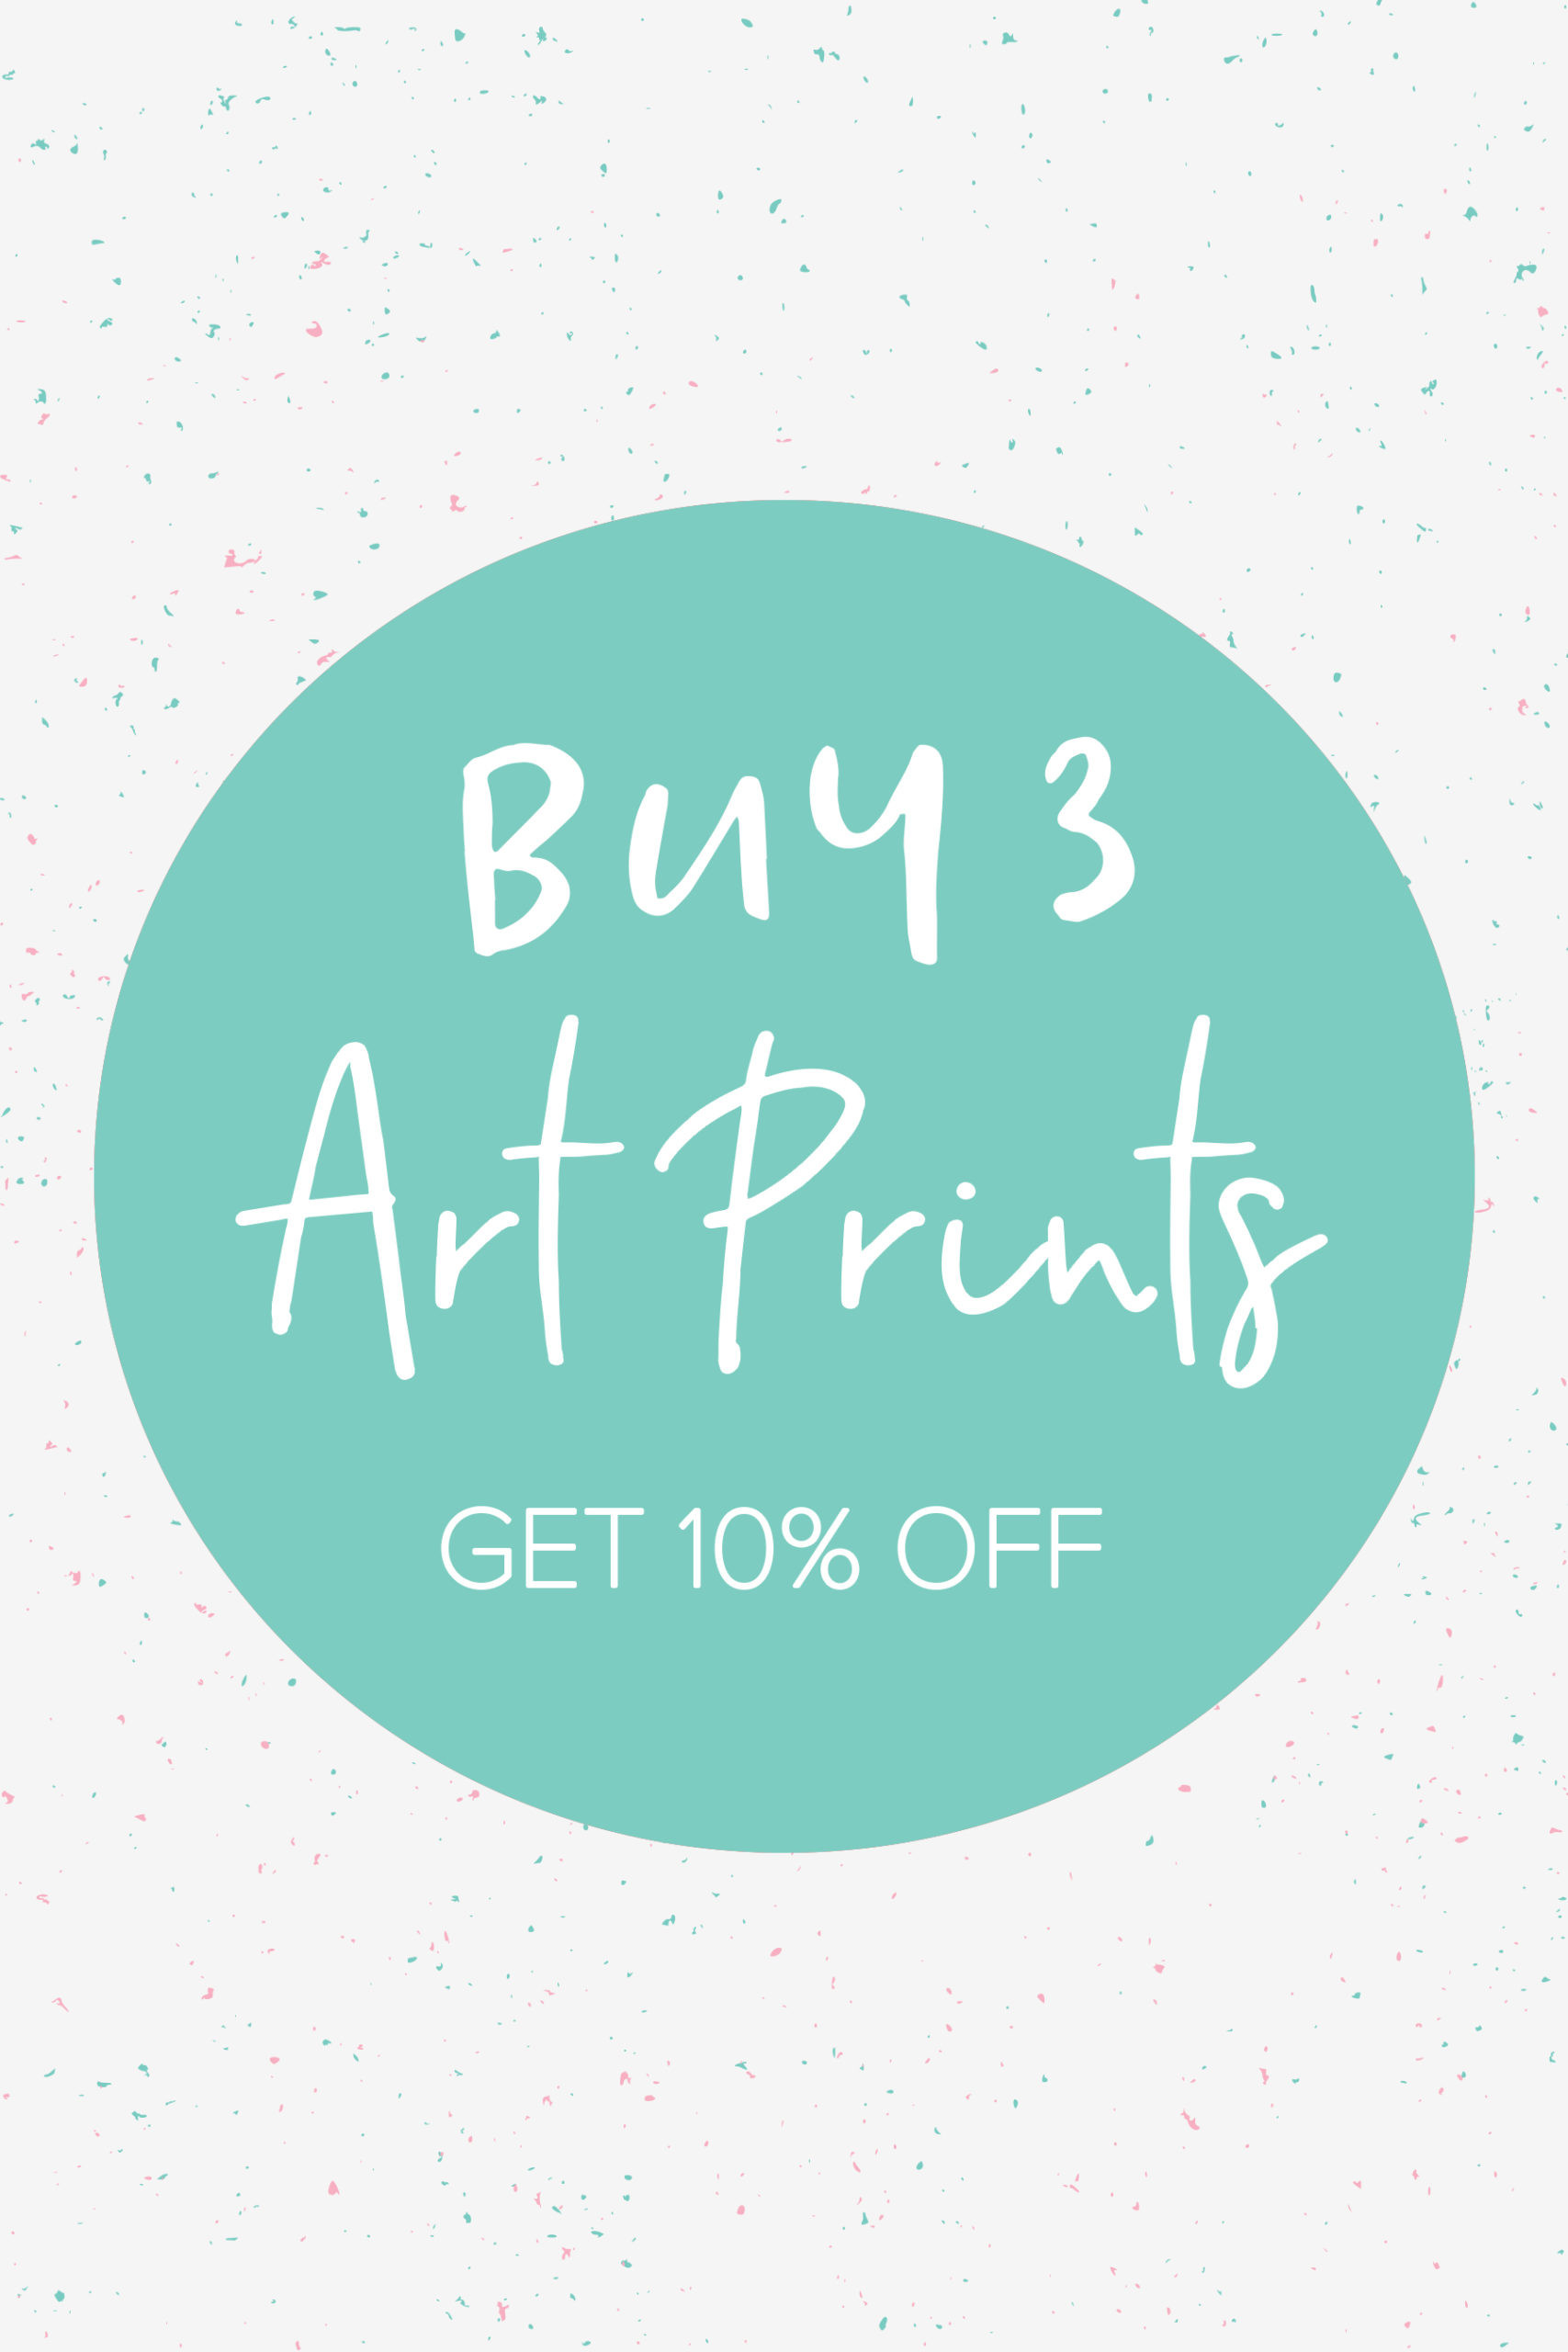 Buy 3 Art Prints Offer